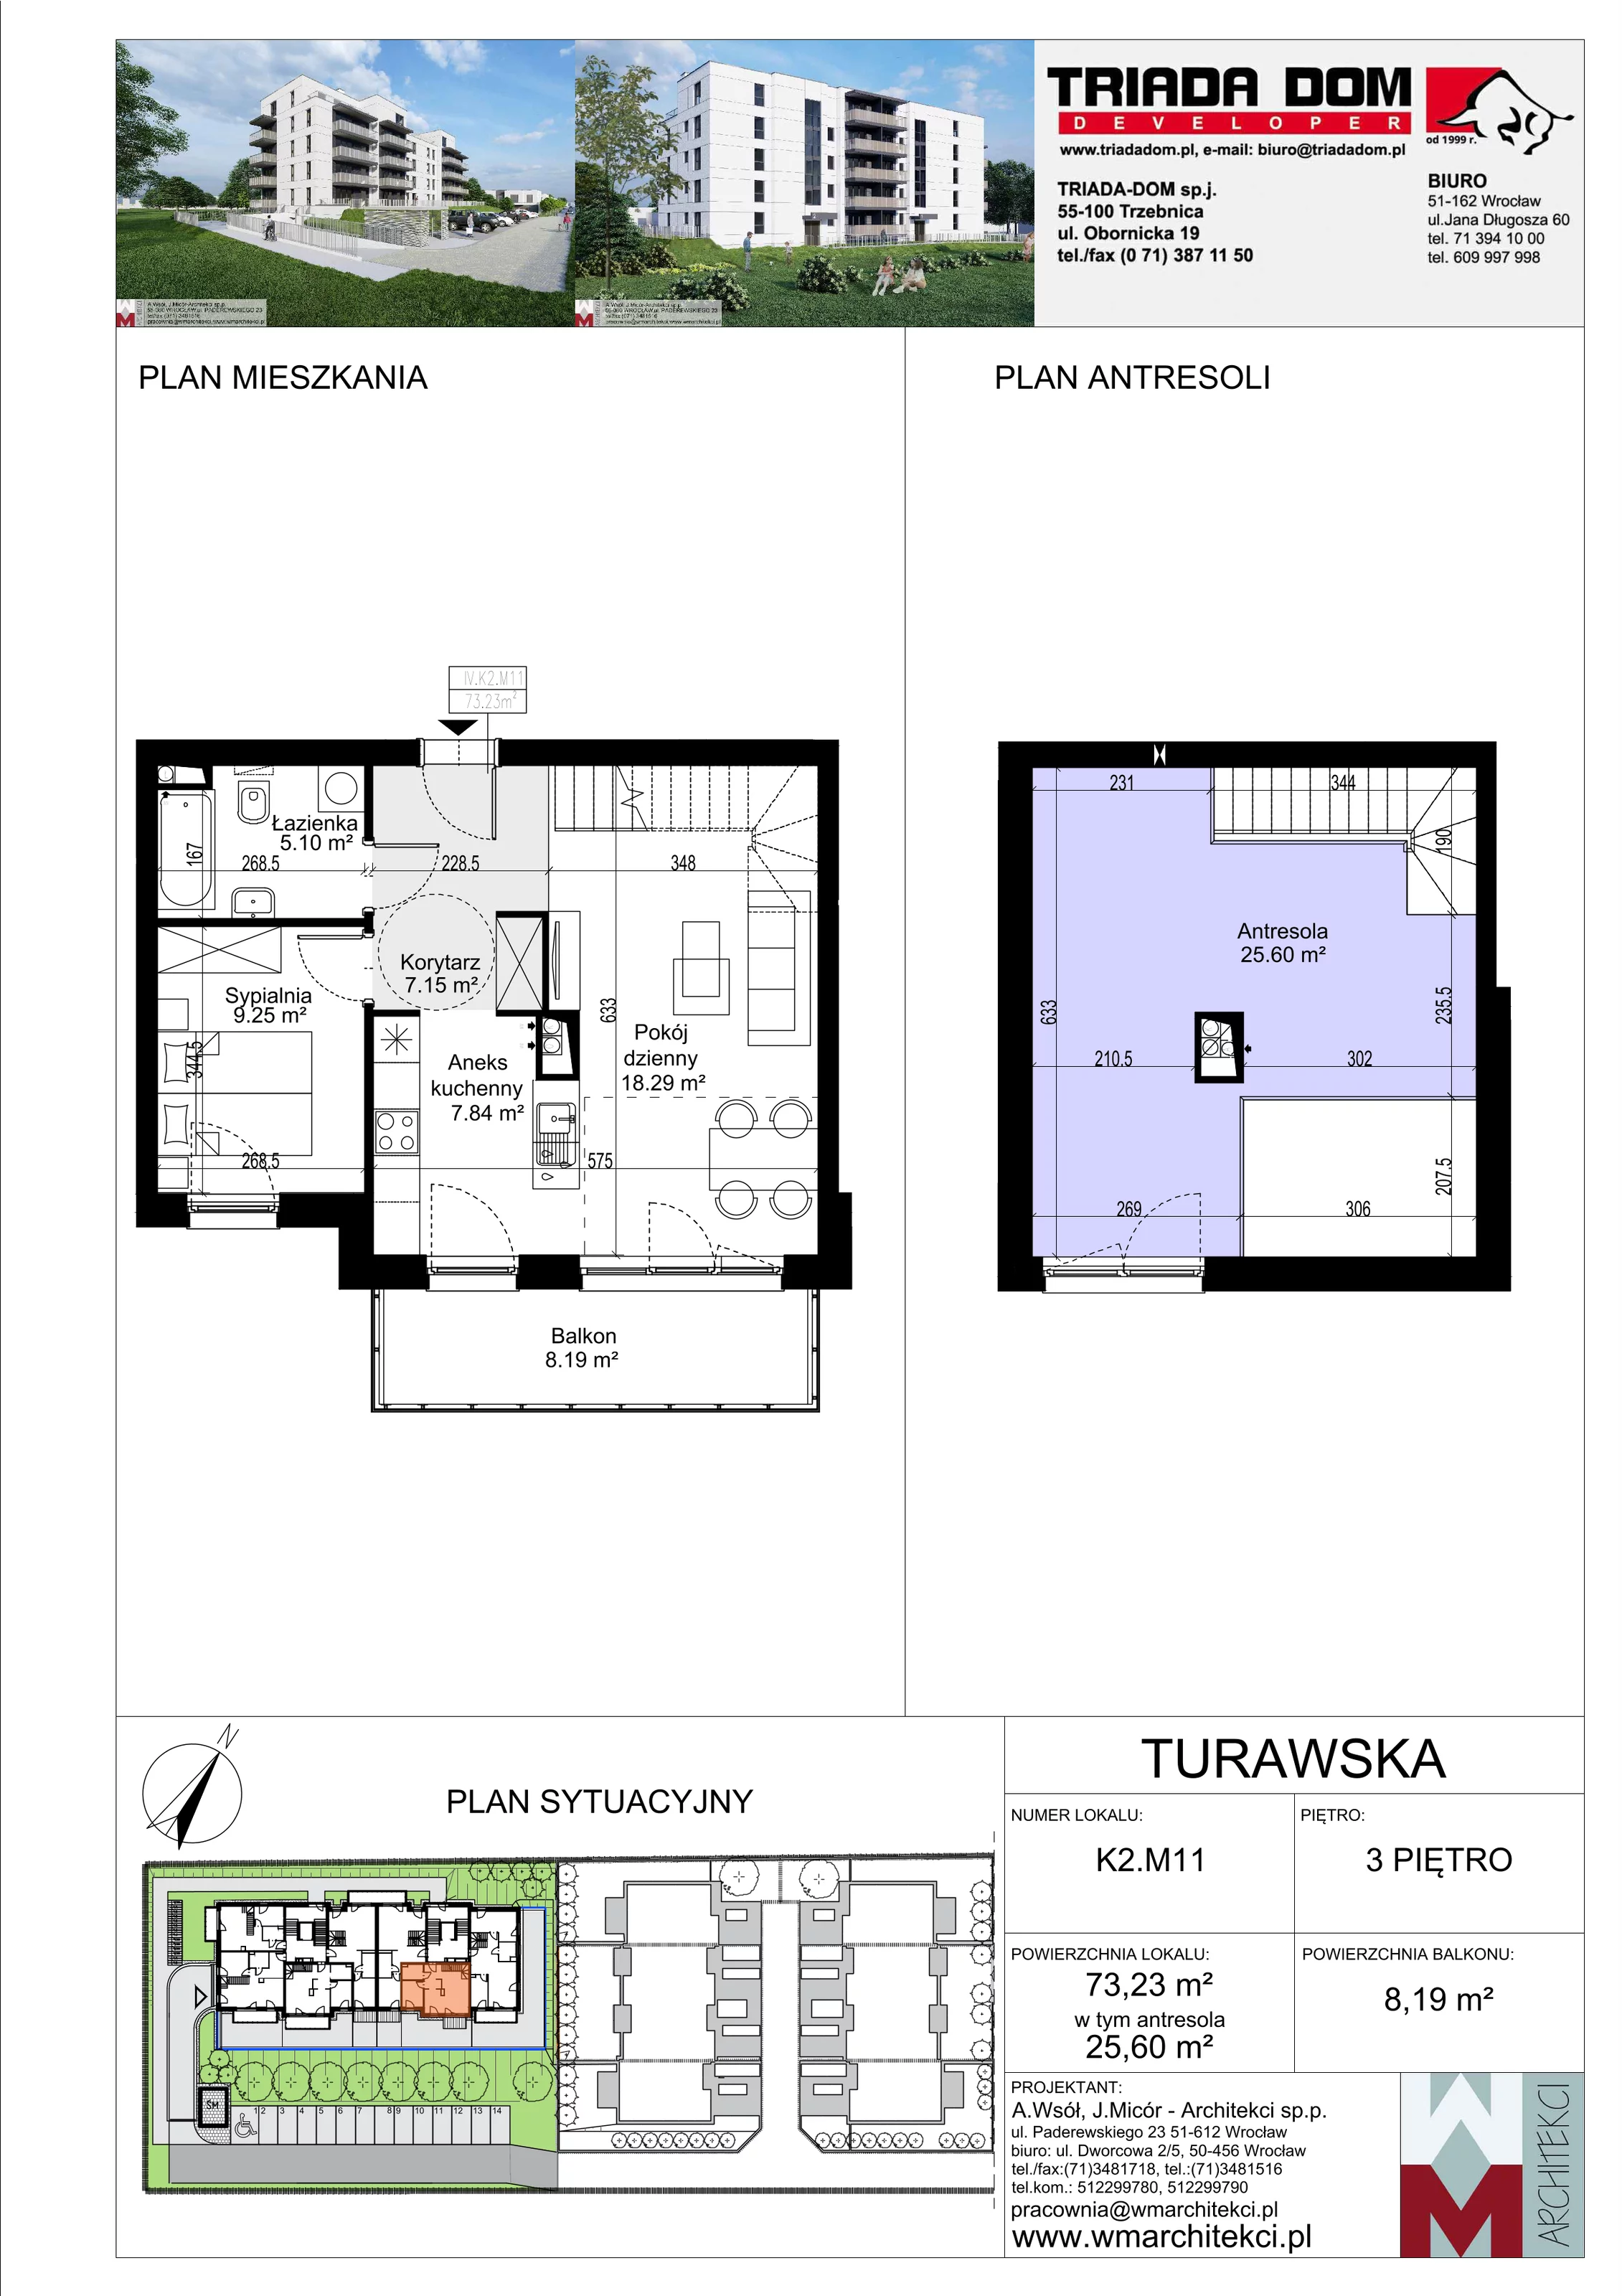 Mieszkanie 73,23 m², piętro 3, oferta nr K2.M11, Ogrody Turawska, Wrocław, Księże, Krzyki, ul. Turawska 78